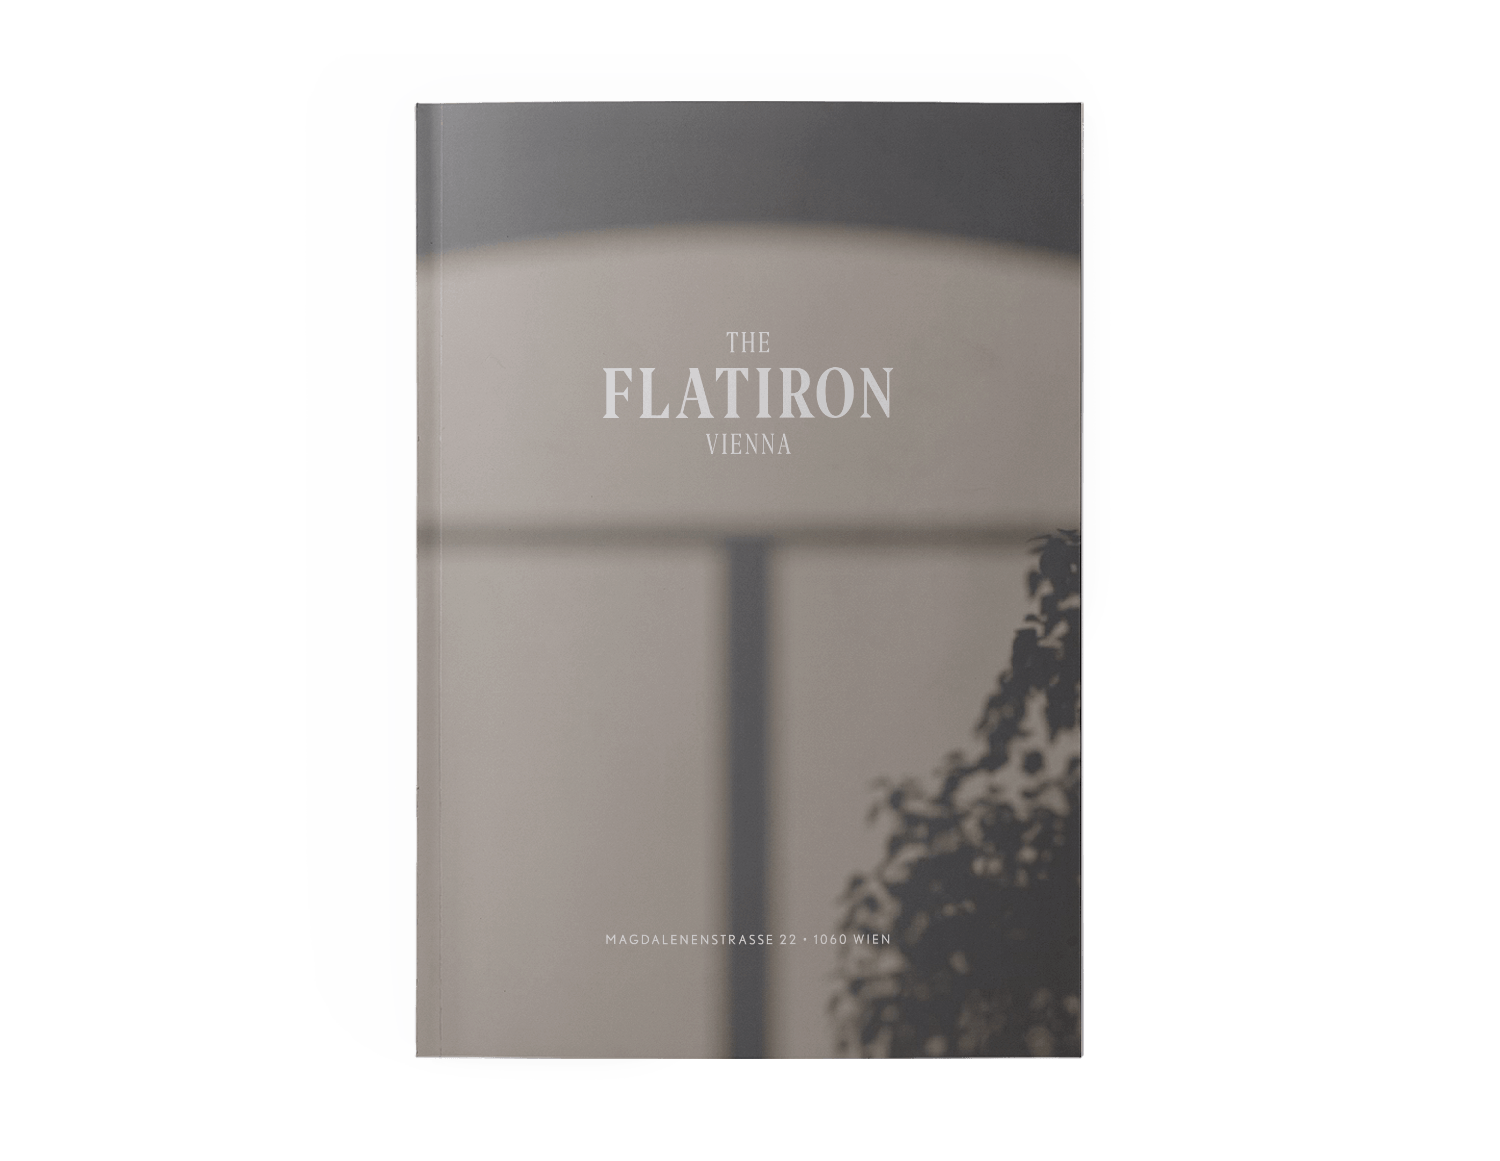 The Flatiron Vienna - Magdalenestrasse 22 - 1060 -  Folder Design